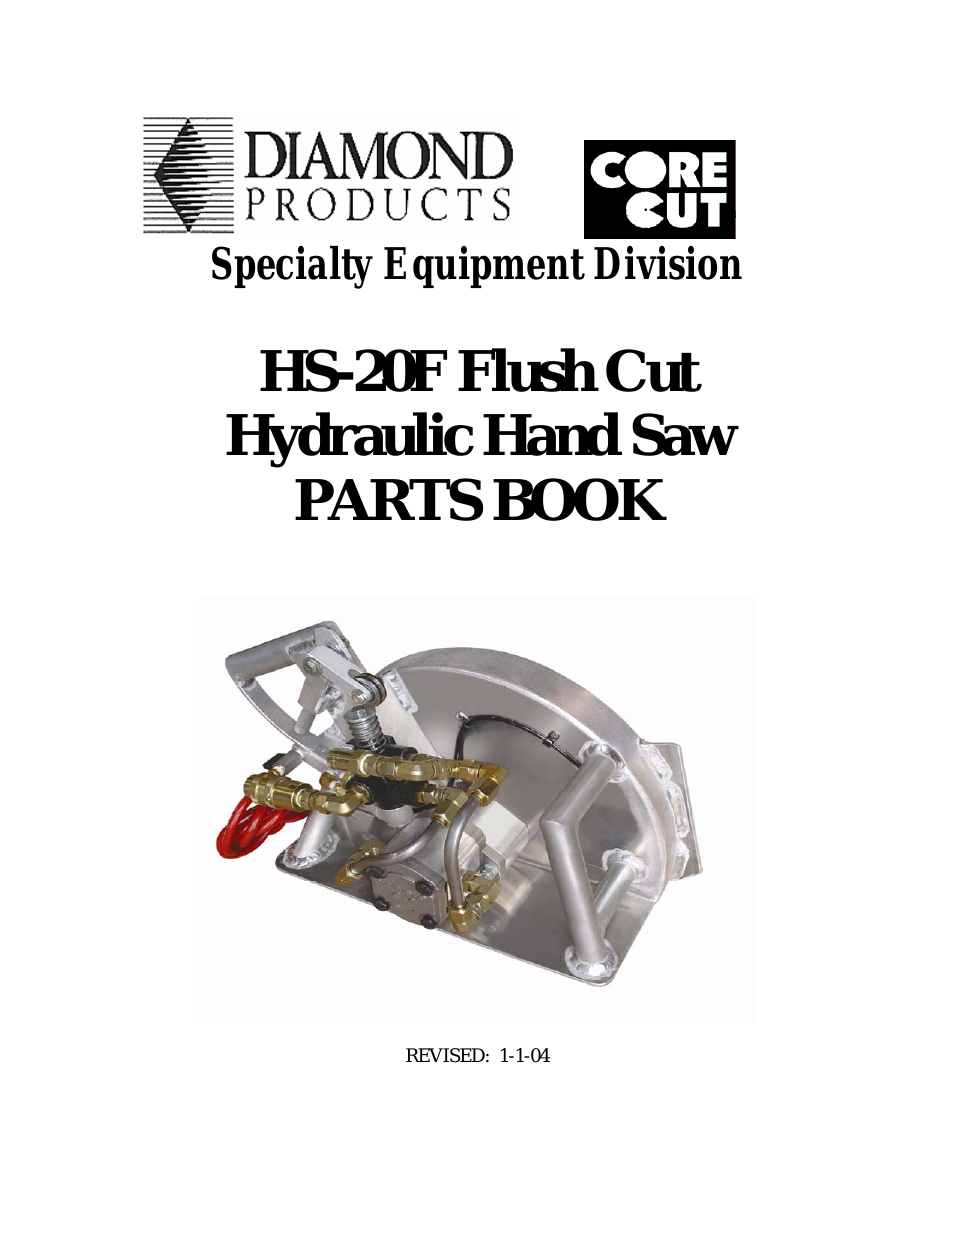 Hydraulic Hand Saw HS-20 Flush